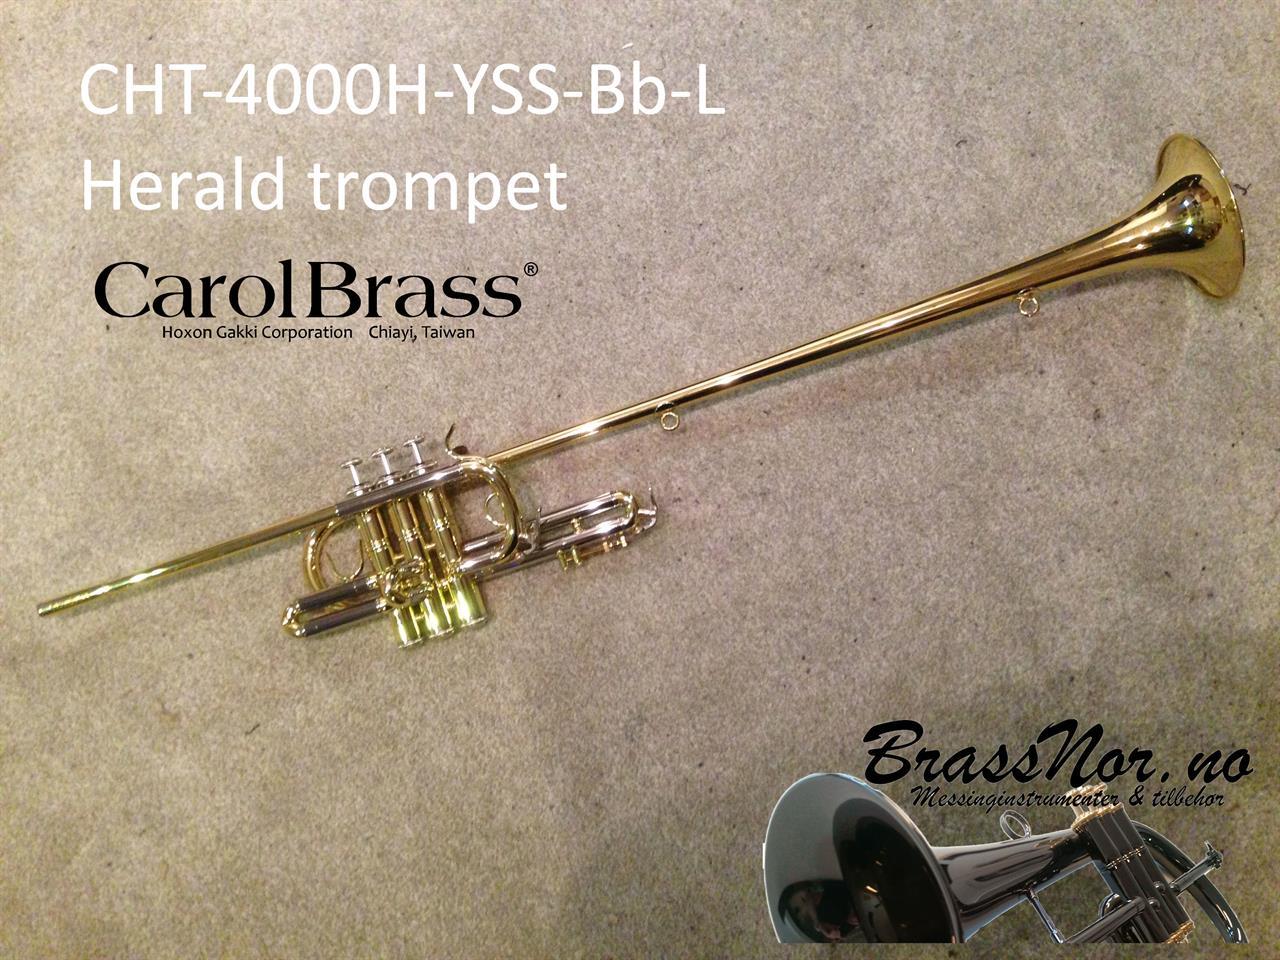 CarolBrass Herald trompet CHT-4200H-YSS-Bb-L